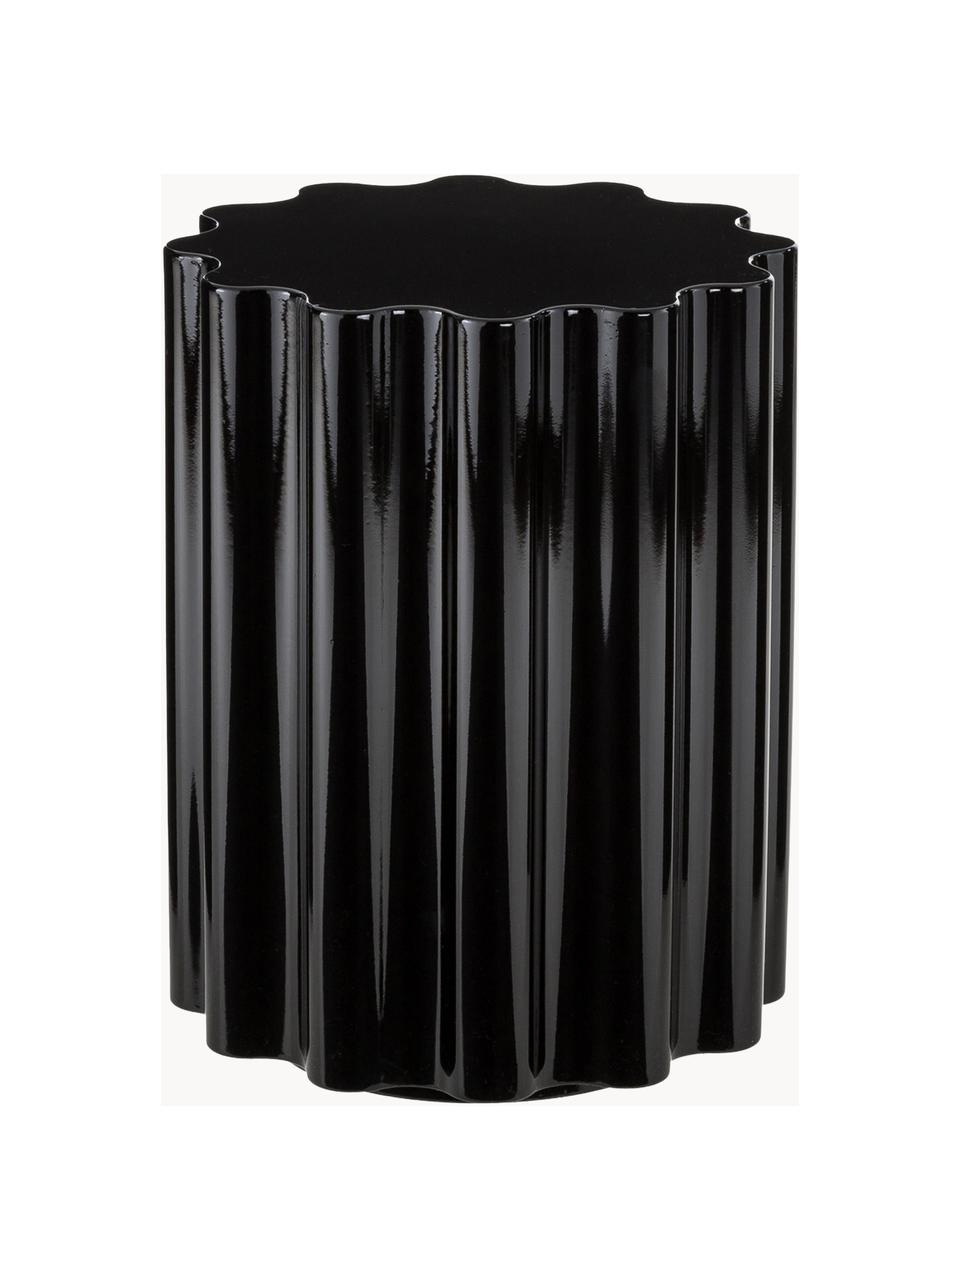 Stołek/stolik pomocniczy Colonna, Tworzywo sztuczne, pigmentowane, termoplastyczne, Czarny, Ø 35 x 46 cm